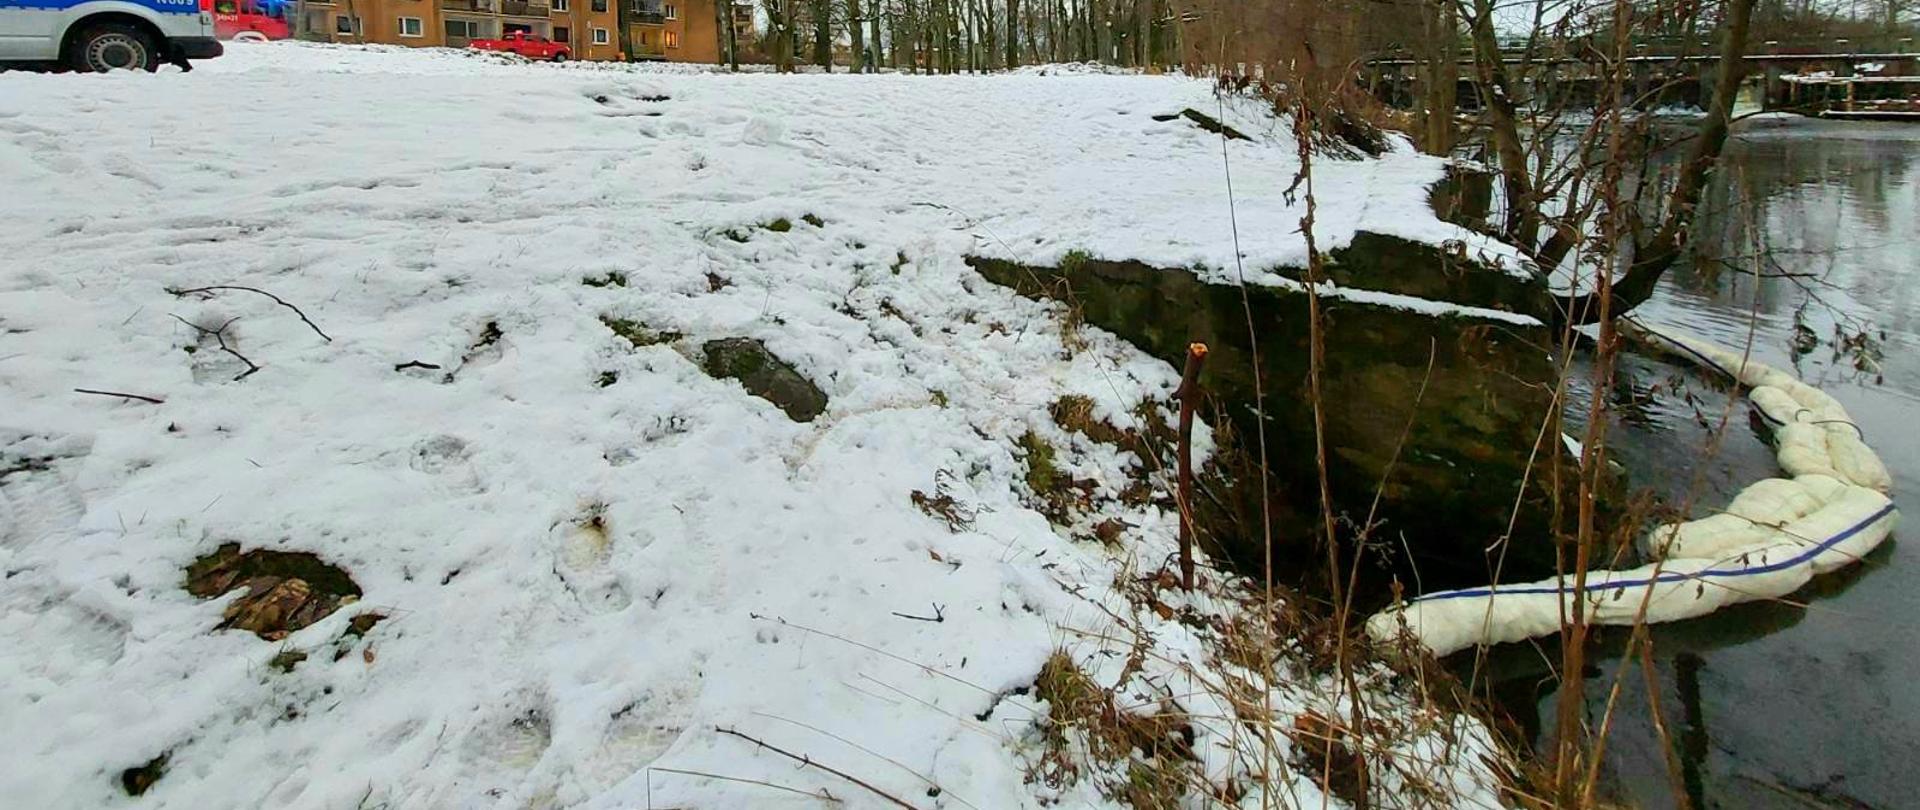 Zdjęcie przedstawia zaporę rozstawiona na rzece Słupia. 